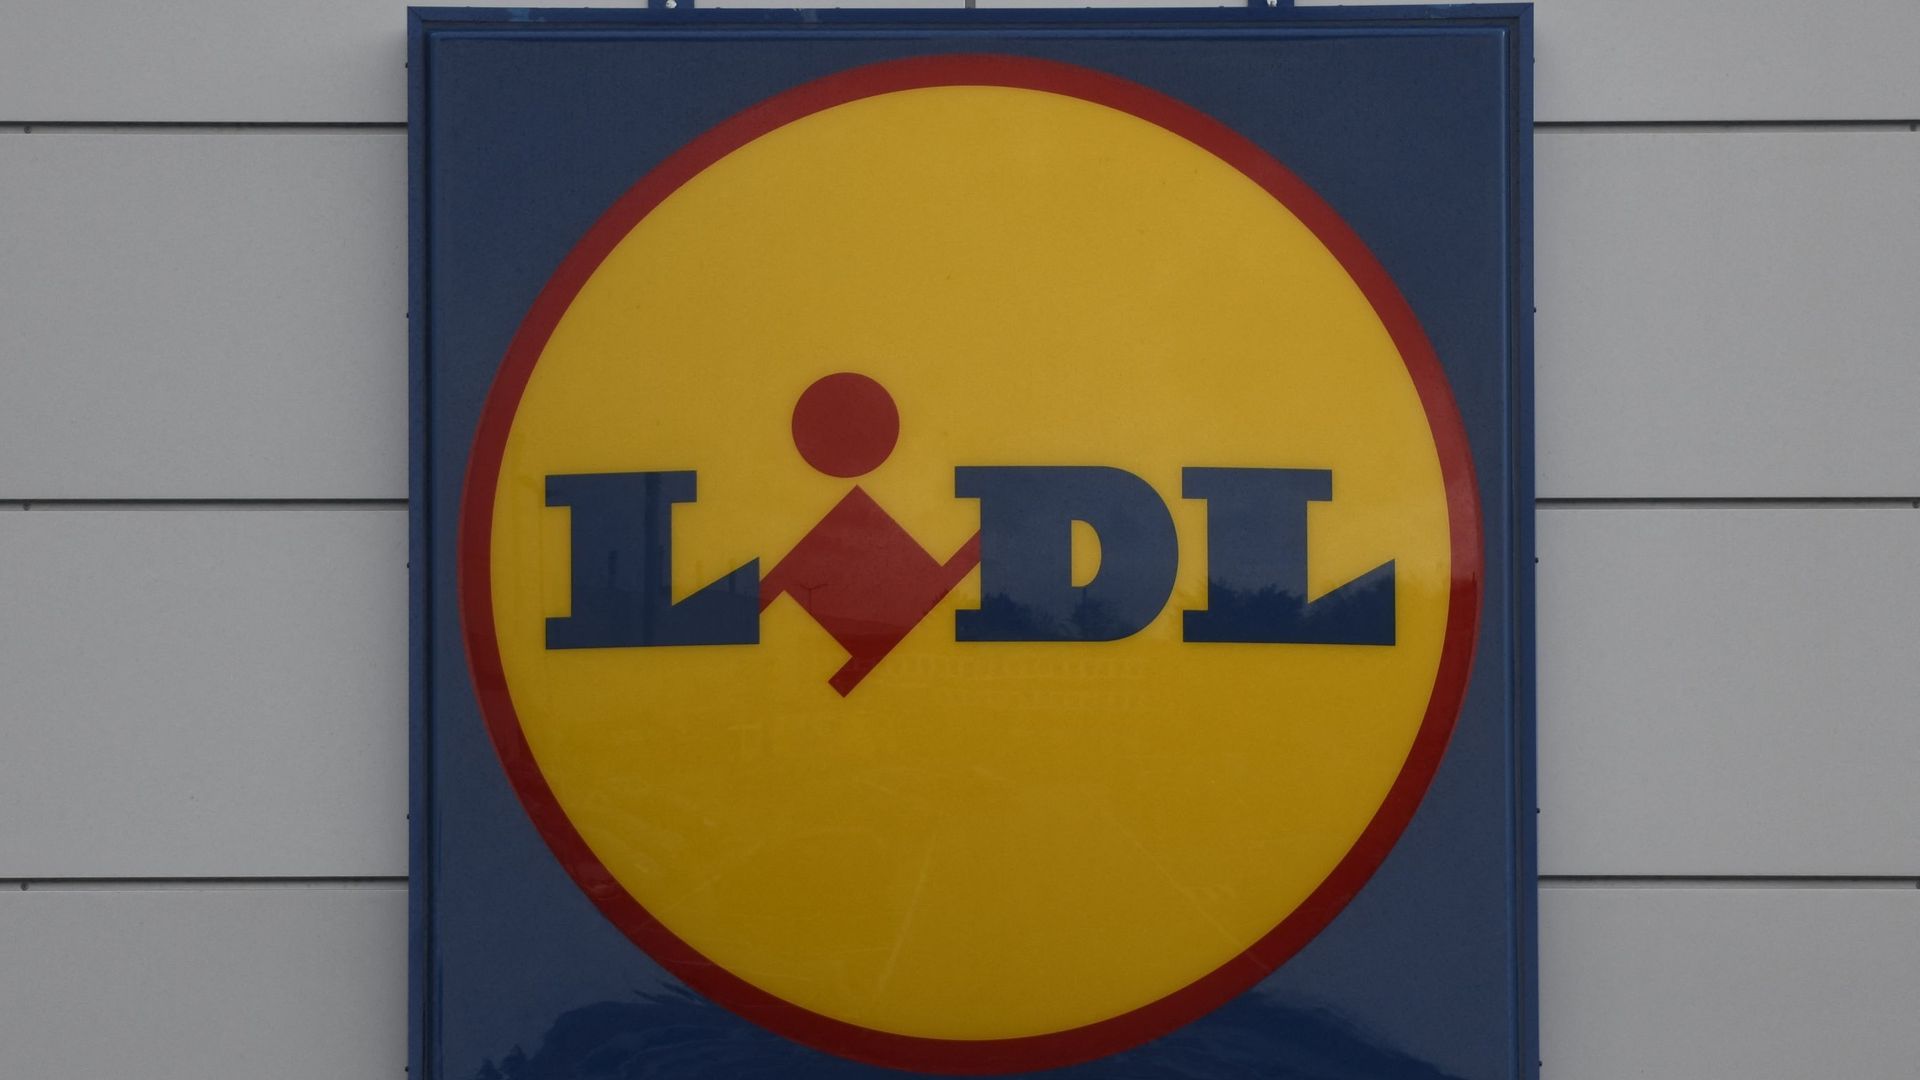 Le Setca annonce une grève samedi dans les magasins Lidl
